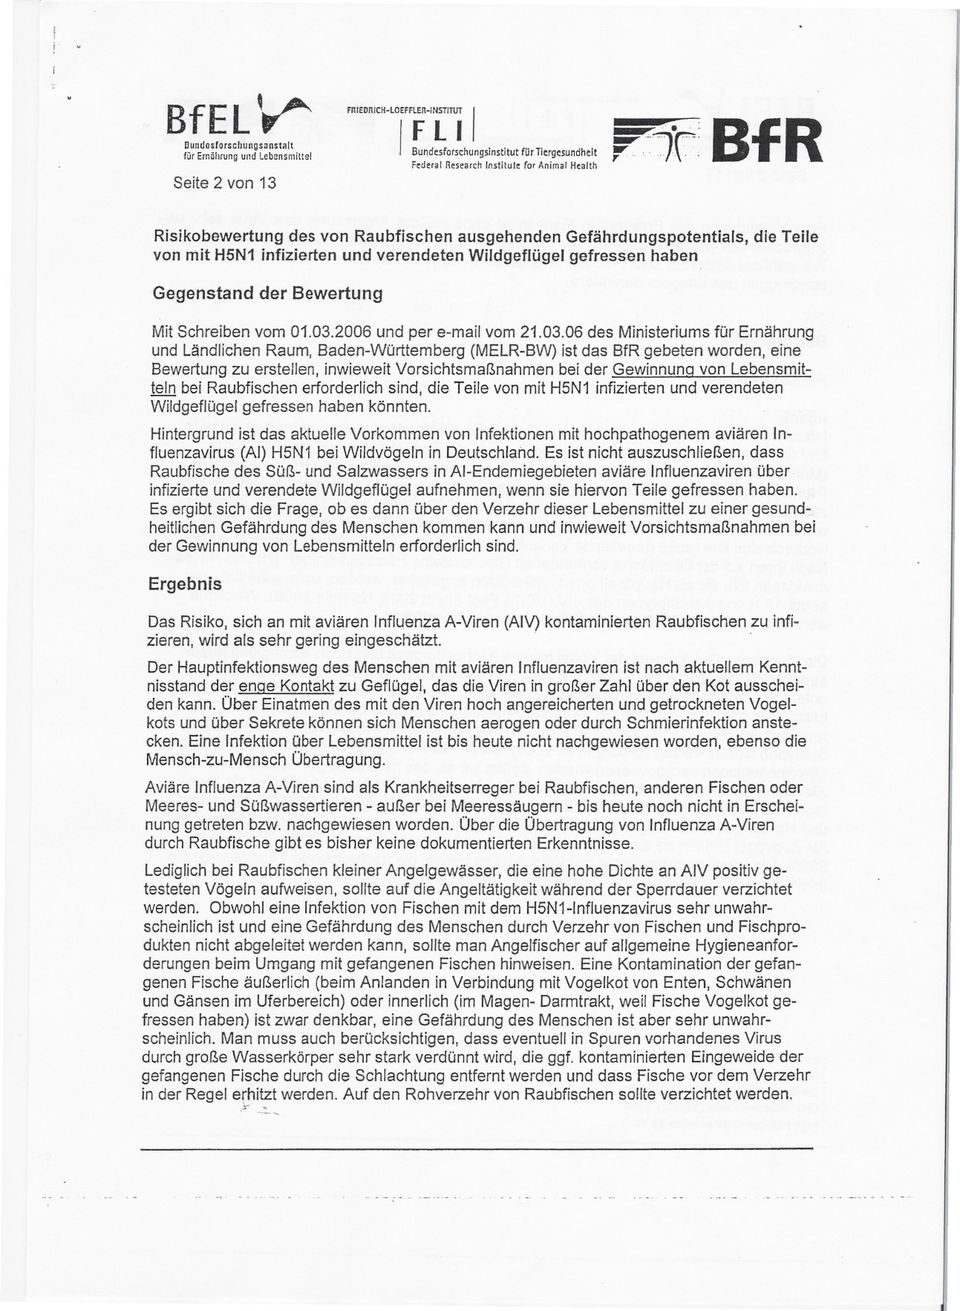 03.2006 und per e-mail vom 21.03.06 des Ministeriums für Ernährung und Ländlichen Raum, Baden-Württemberg (MELR-BW) ist das BfR gebeten worden, eine Bewertung zu erstellen, inwieweit